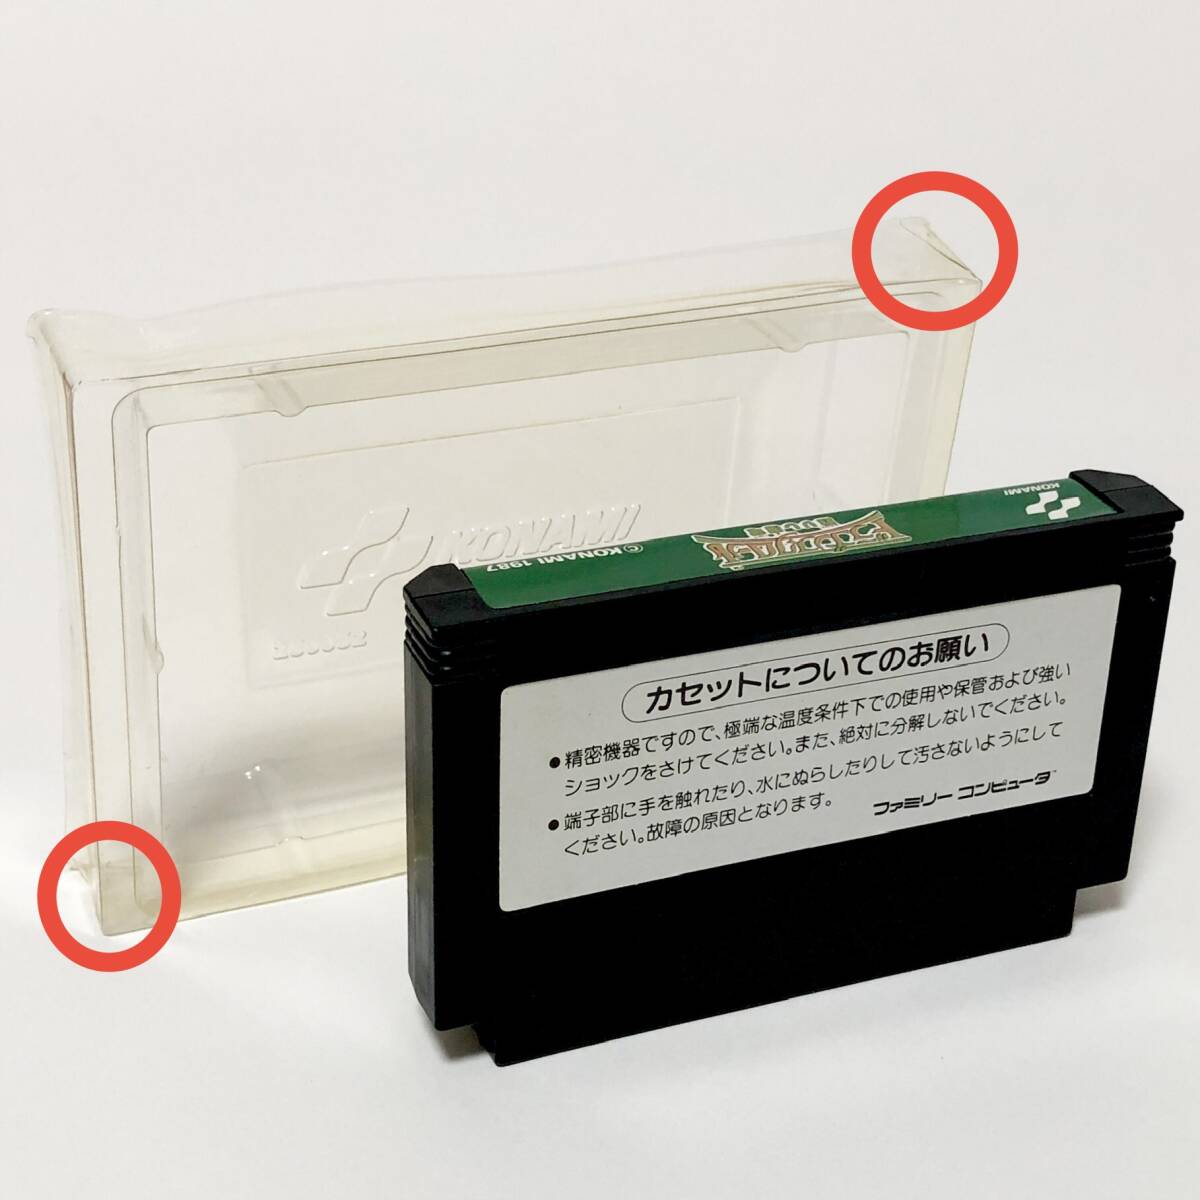 ファミコン ドラゴンスクロール 甦りし魔竜 箱説付き カード付き 痛みあり コナミ Nintendo Famicom Dragon Scroll CIB Tested Konami_画像8